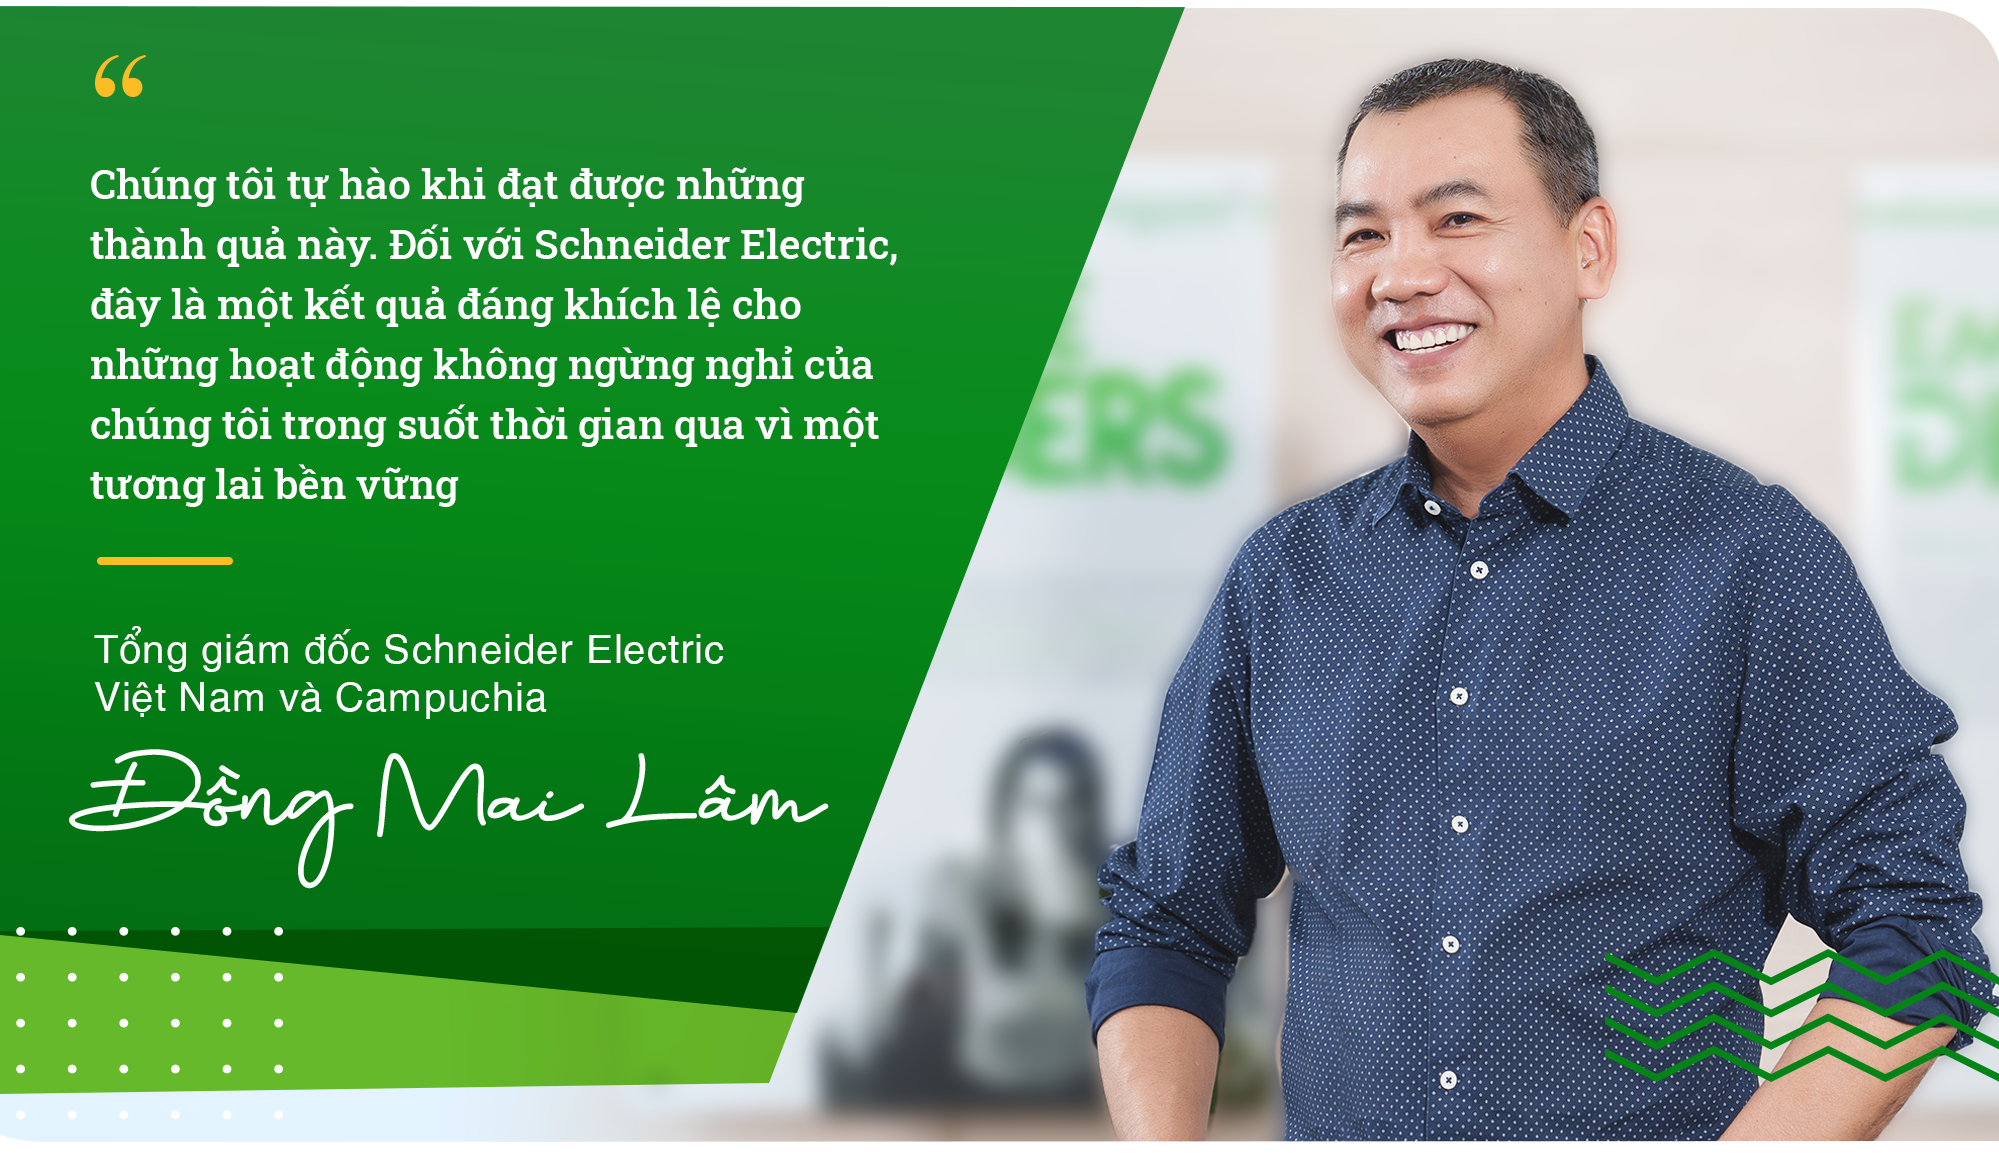 Tổng Giám đốc Schneider Electric Việt Nam & Campuchia: Quản lý năng lượng dựng nền móng cho một thế giới bền vững và linh hoạt - Ảnh 10.